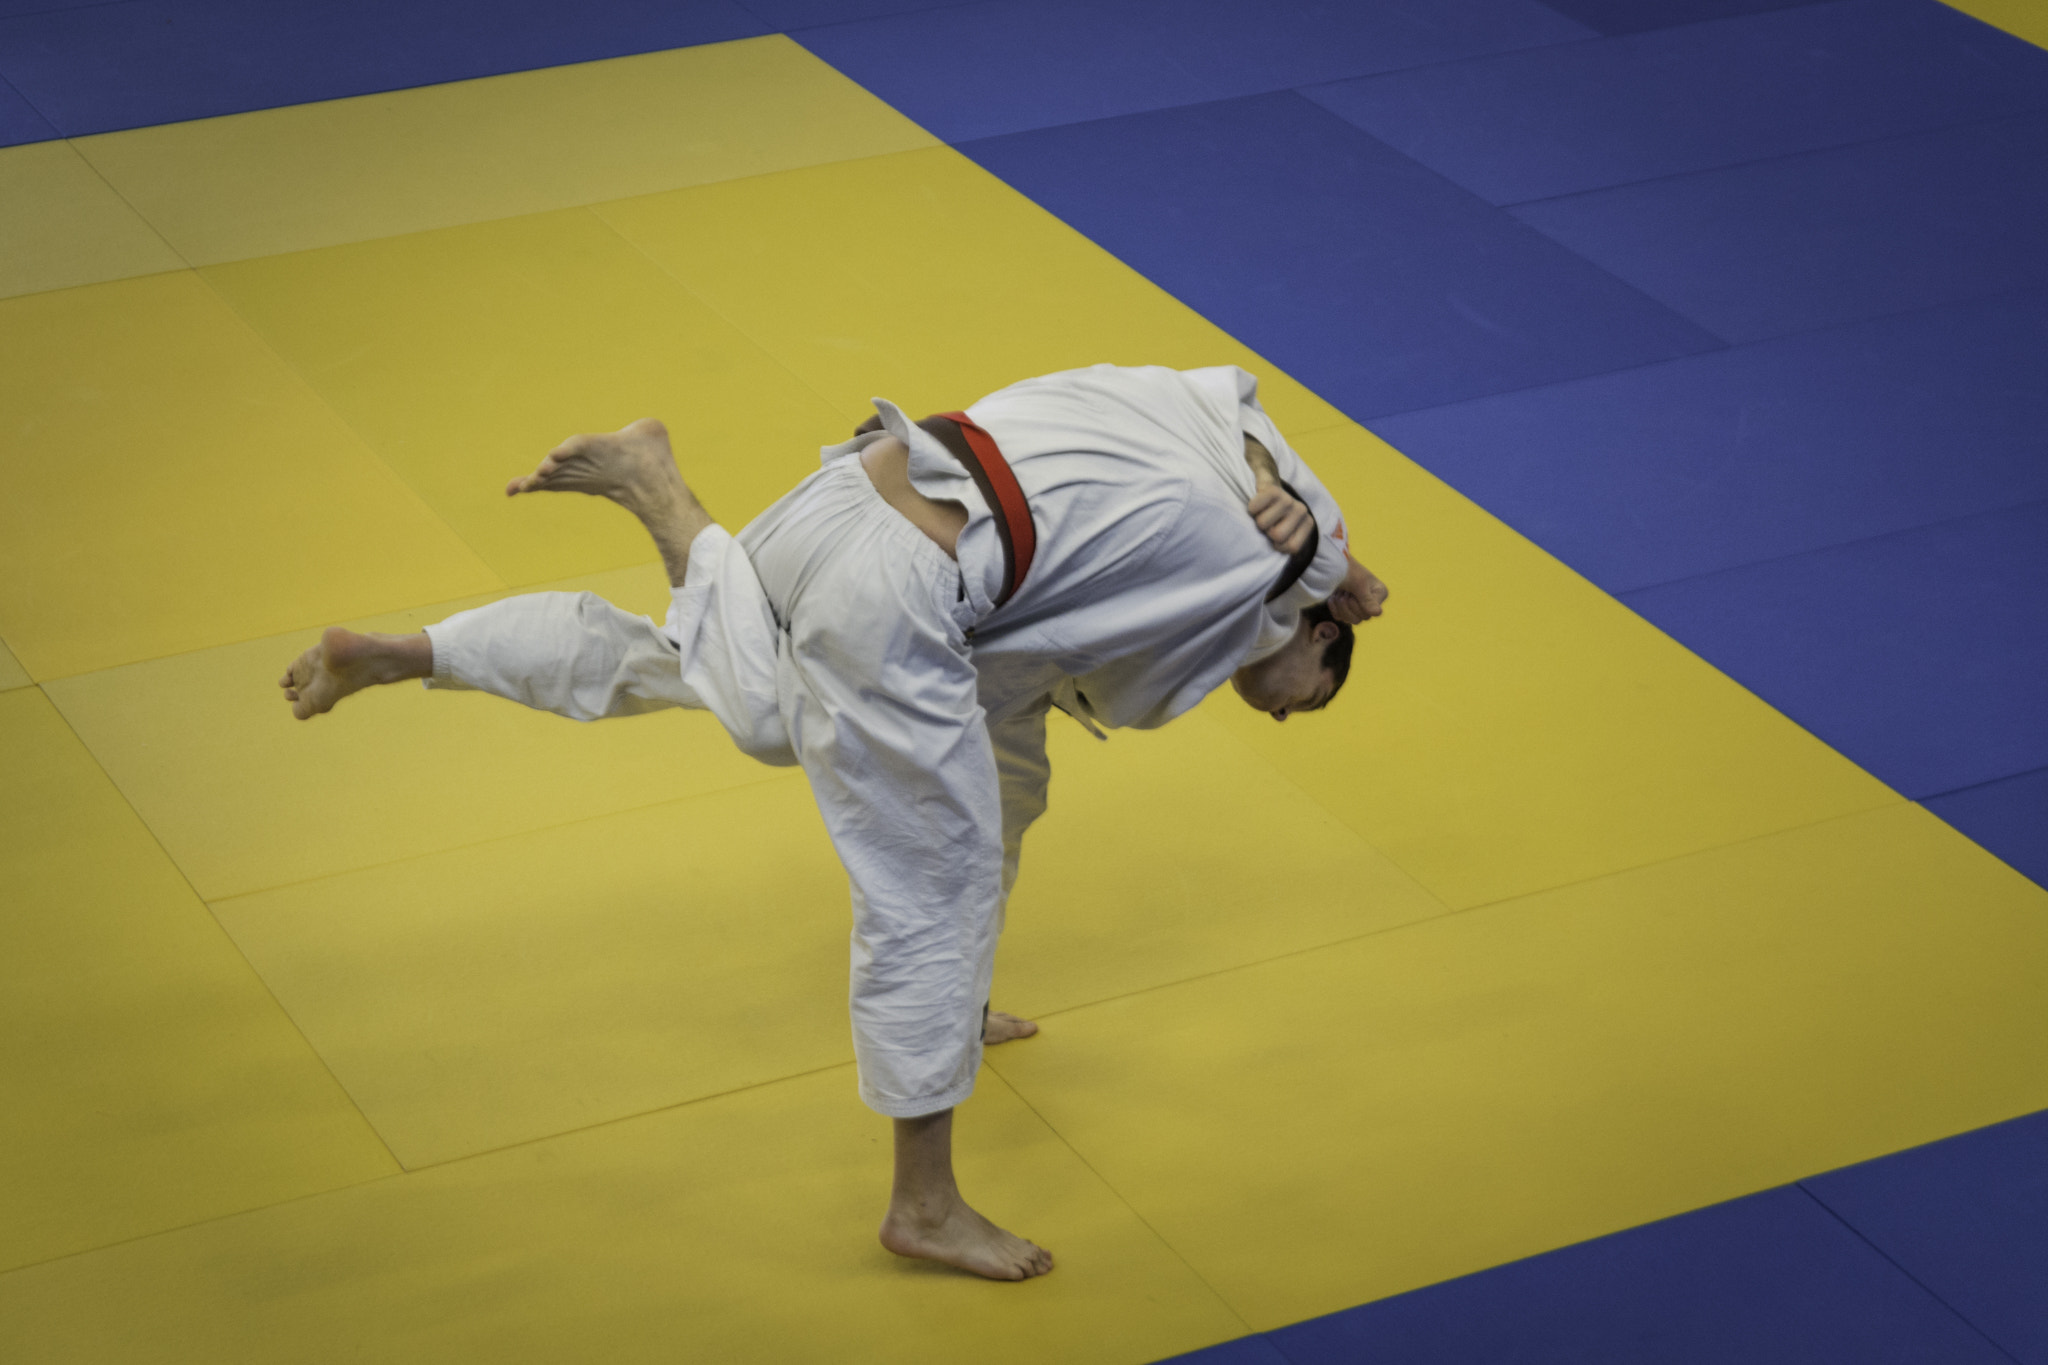 Nikon D7100 sample photo. Championnat de normandie par équipe sénior en judo photography